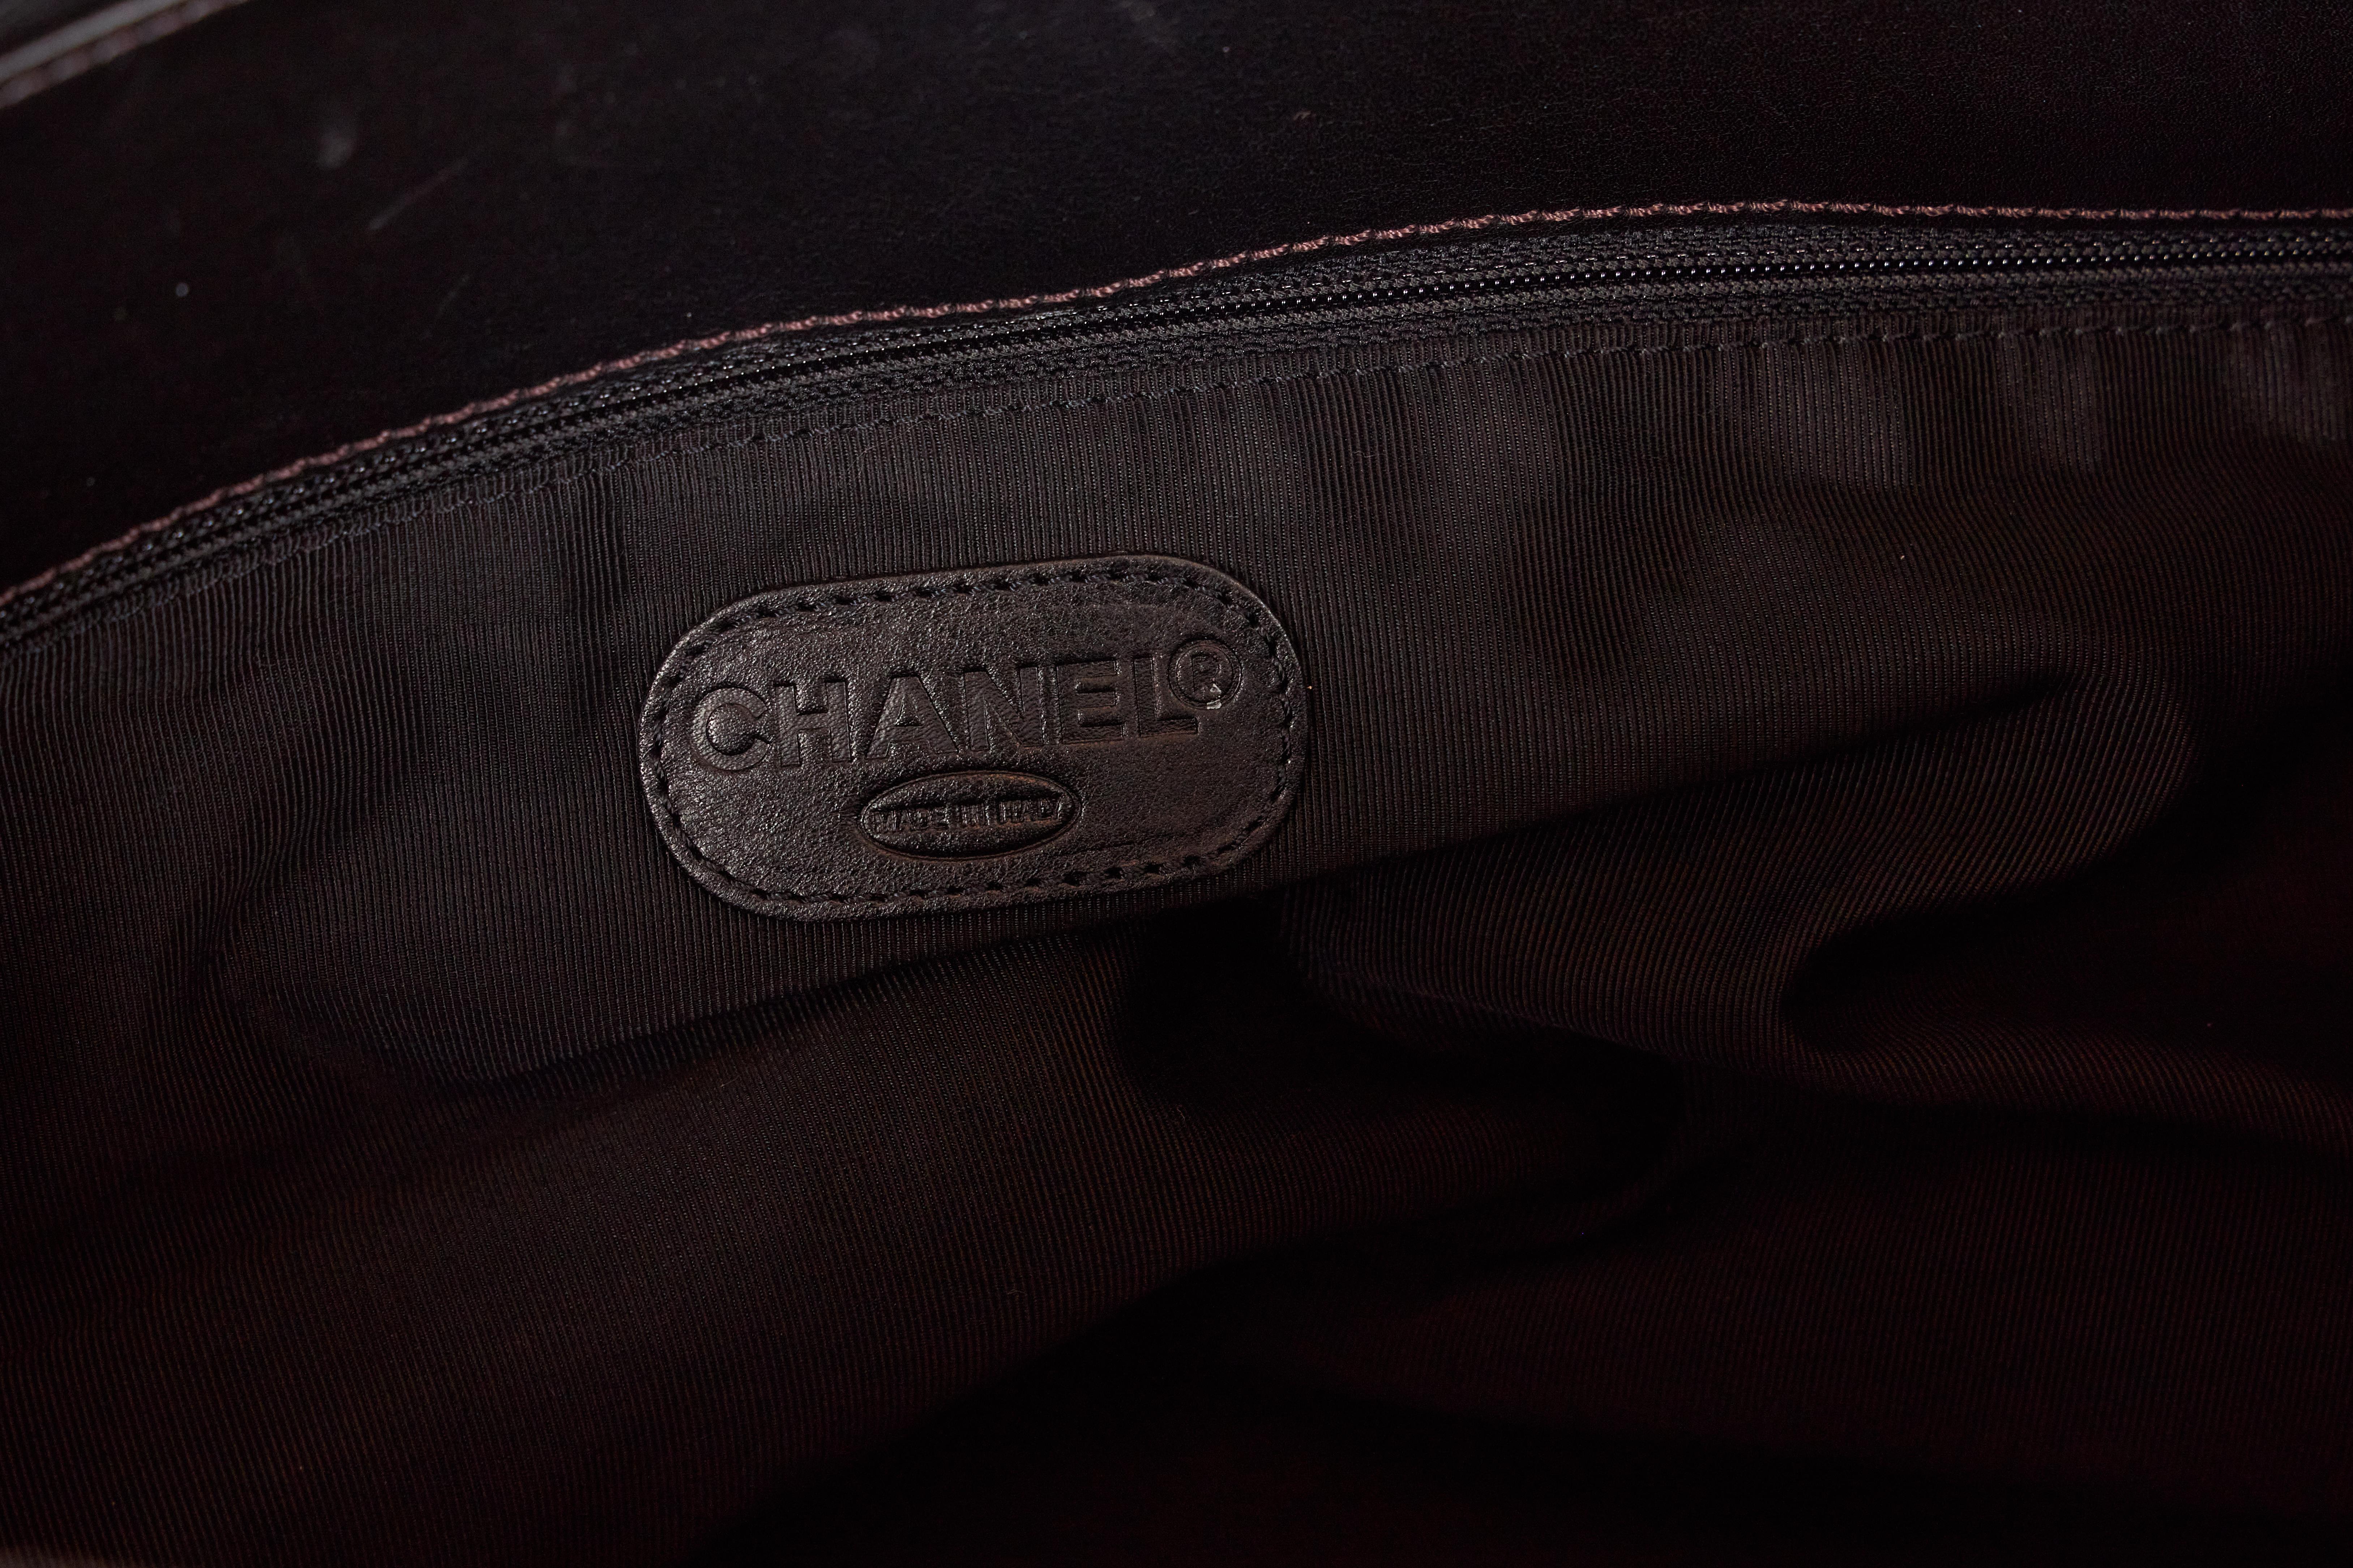 1990's Chanel Vintage Black Leather Unisex Bag For Sale 2